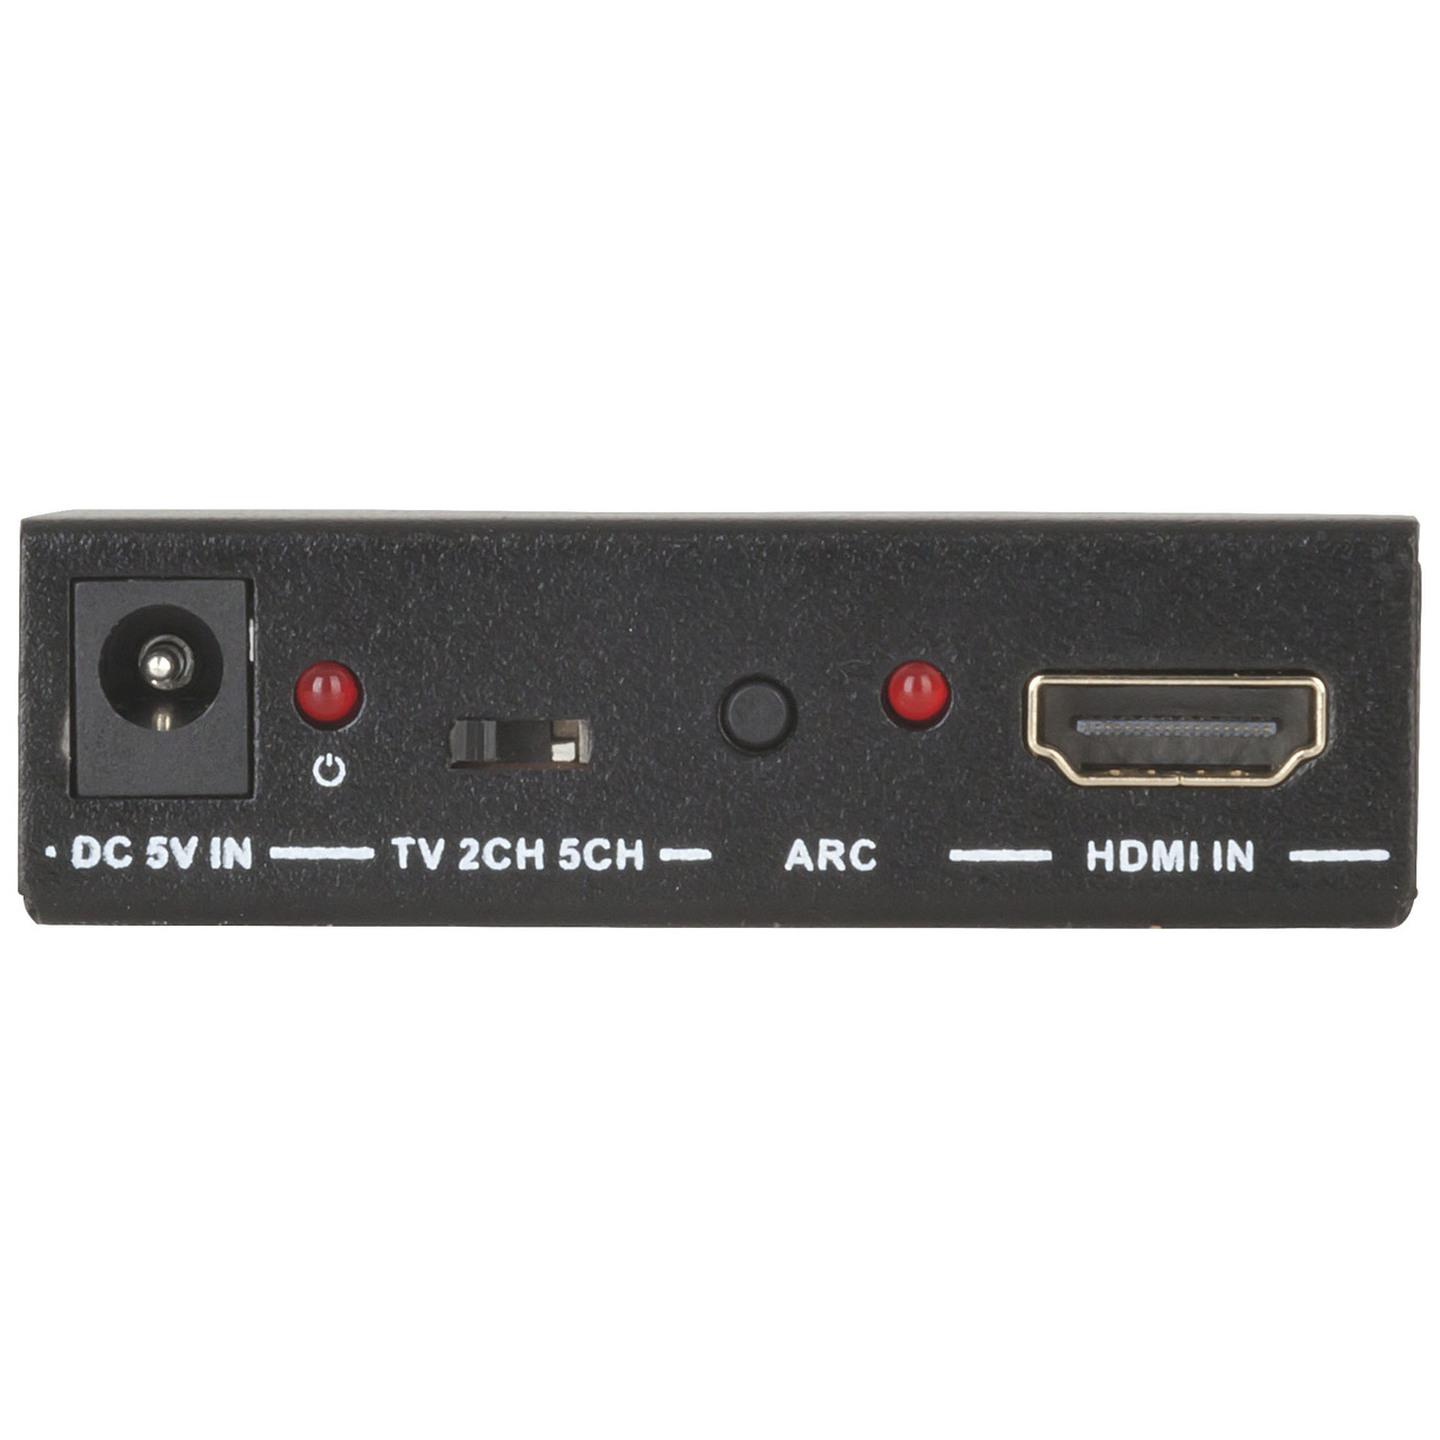 HDMI 1.4 Audio Extractor